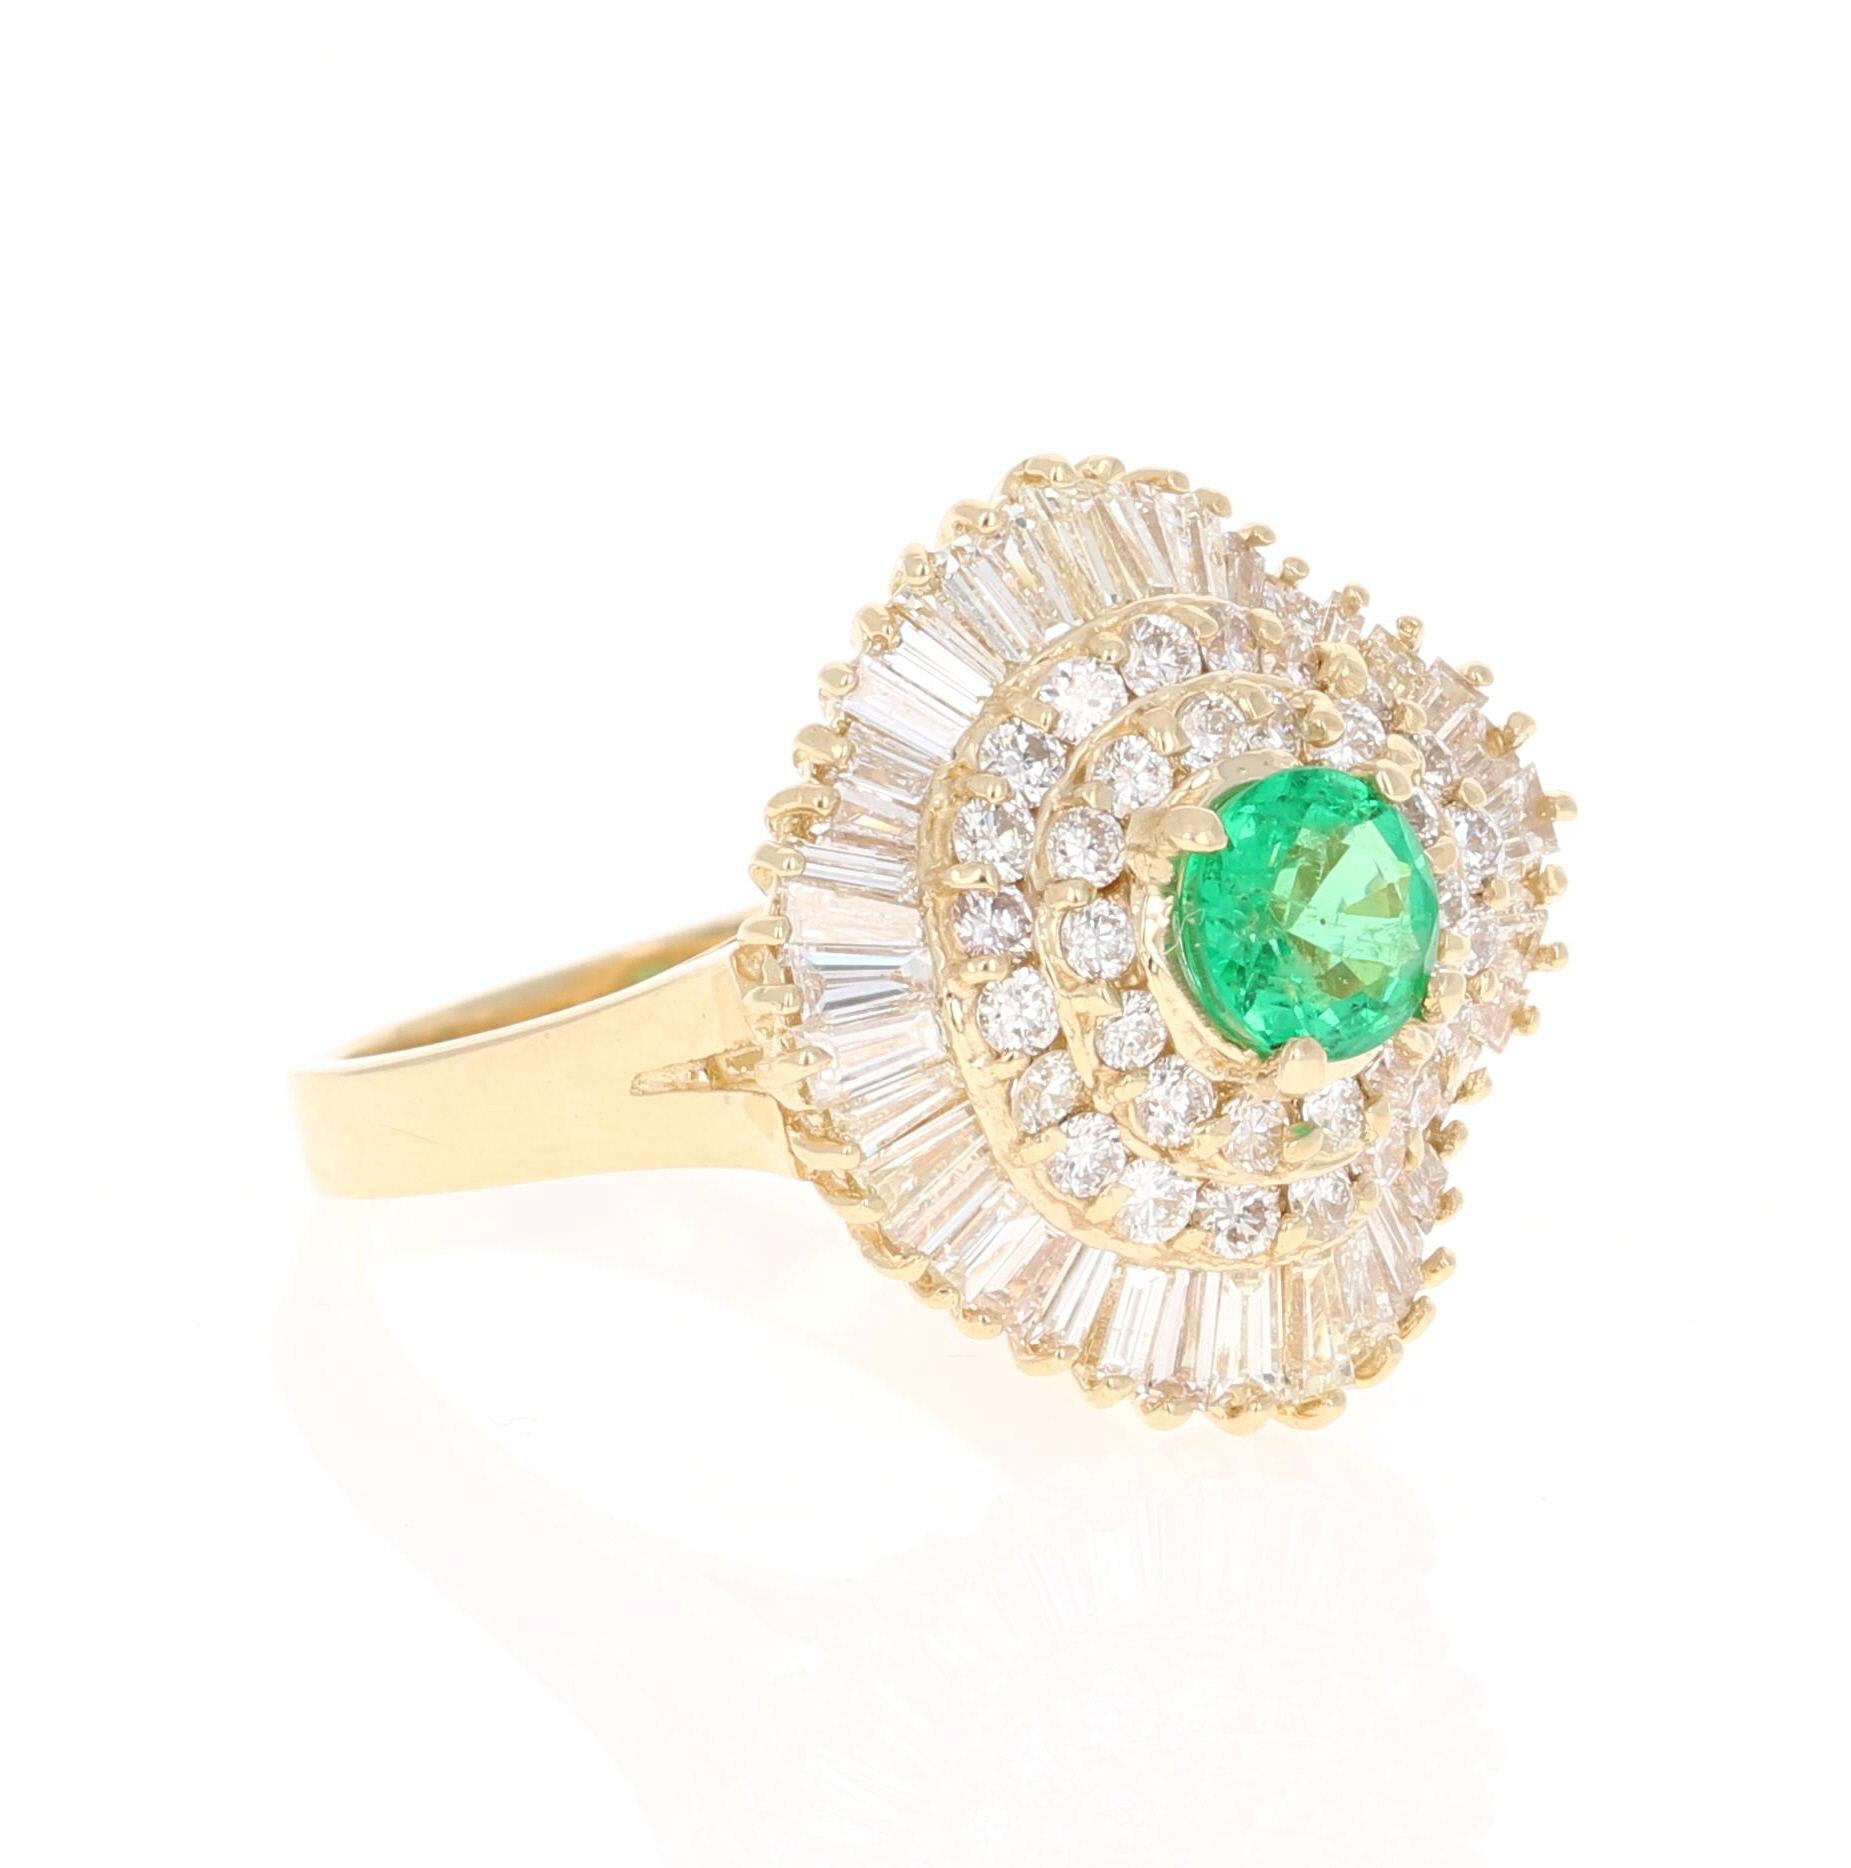 Eine schöne 2,64 Karat Smaragd und Diamant-Ring in 14K Gelbgold.
Dieser wunderschöne Ring hat einen 0,72 Karat Smaragd im Rundschliff, der in der Mitte des Rings gefasst ist! Der Smaragd ist umgeben von 36 Diamanten im Rundschliff mit einem Gewicht